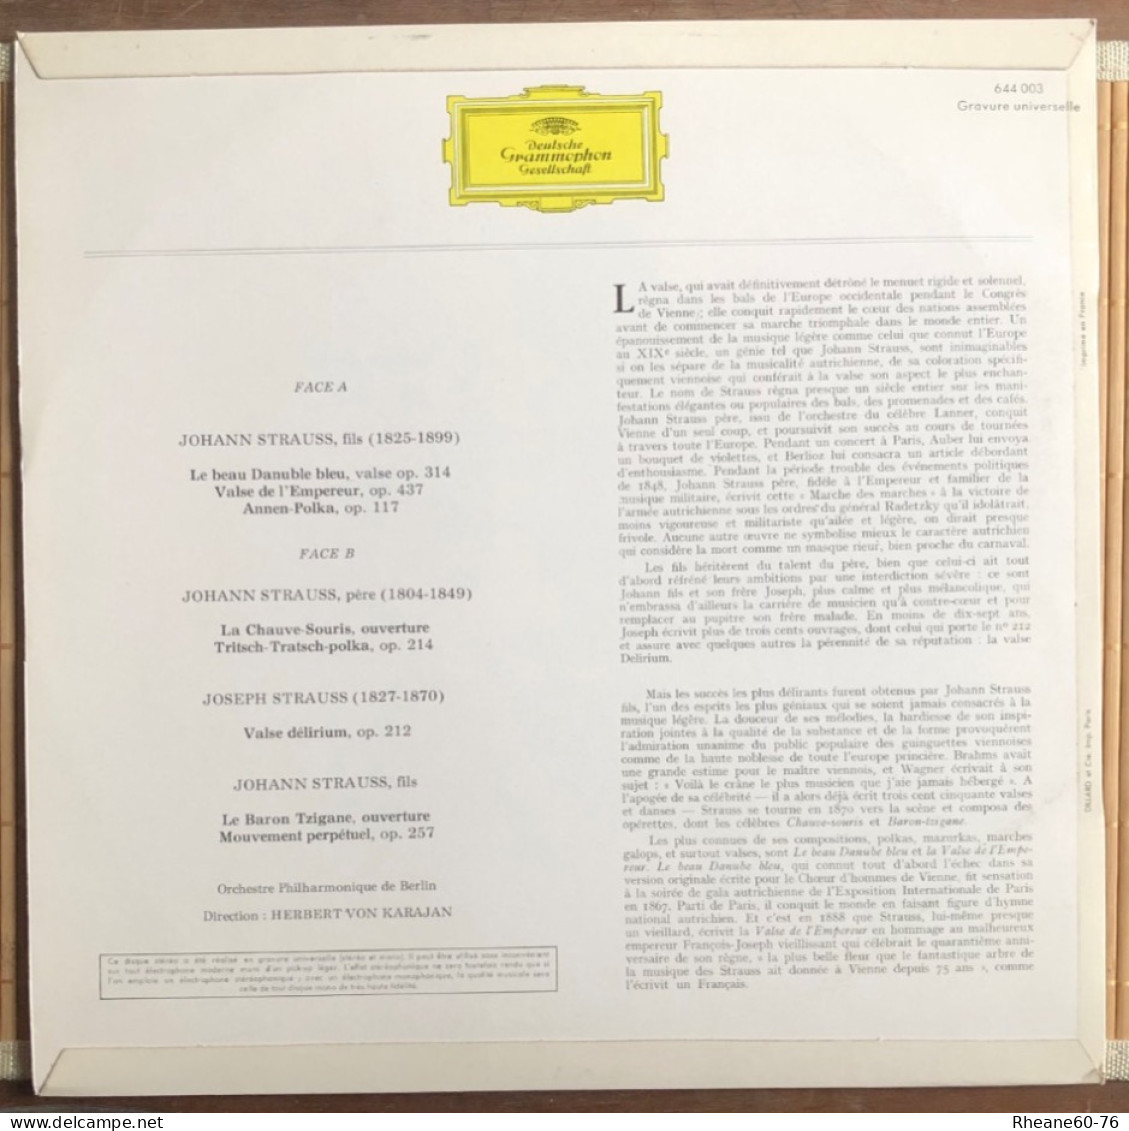 33T A Vienne Au Temps Des Strauss - Herbert Von Karajan Orchestre Philharmonique De Berlin - 644003 Deutsche Grammophon - Christmas Carols